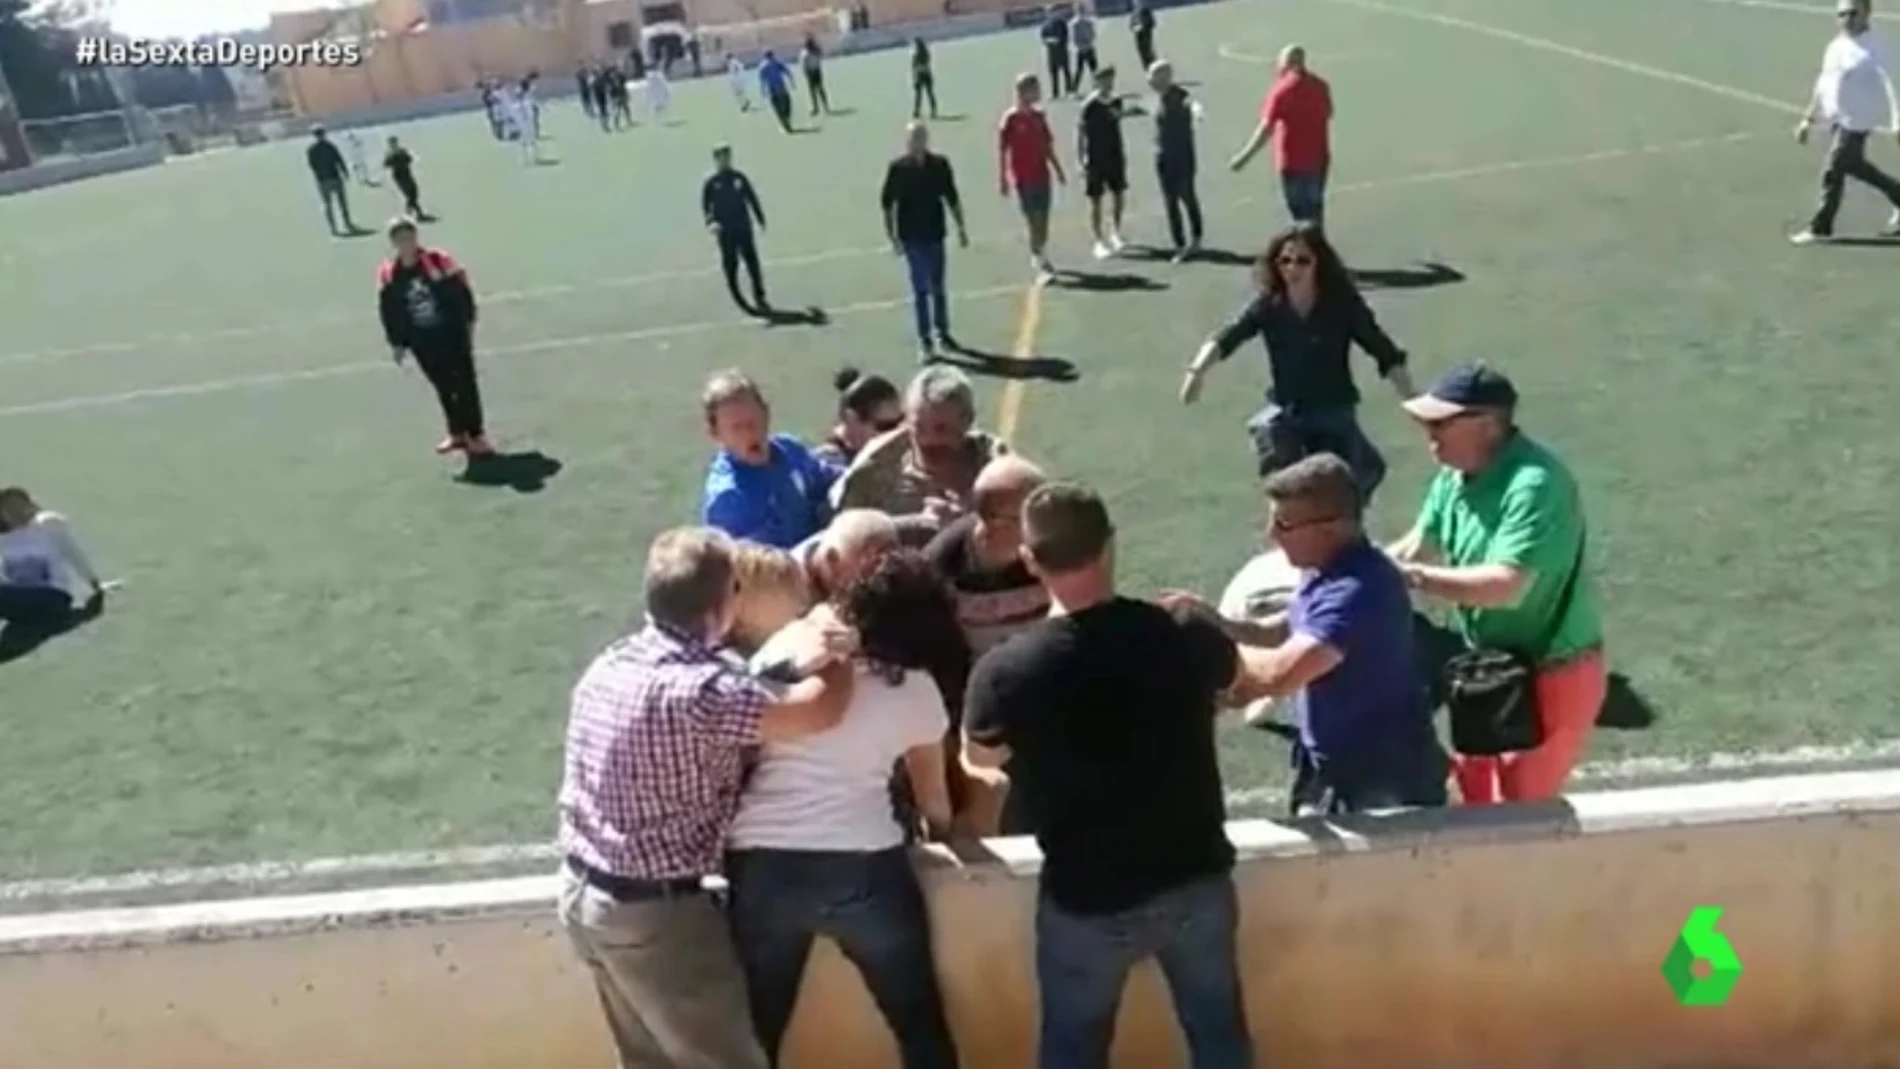 Padres implicados en la pelea durante un partido en Mallorca